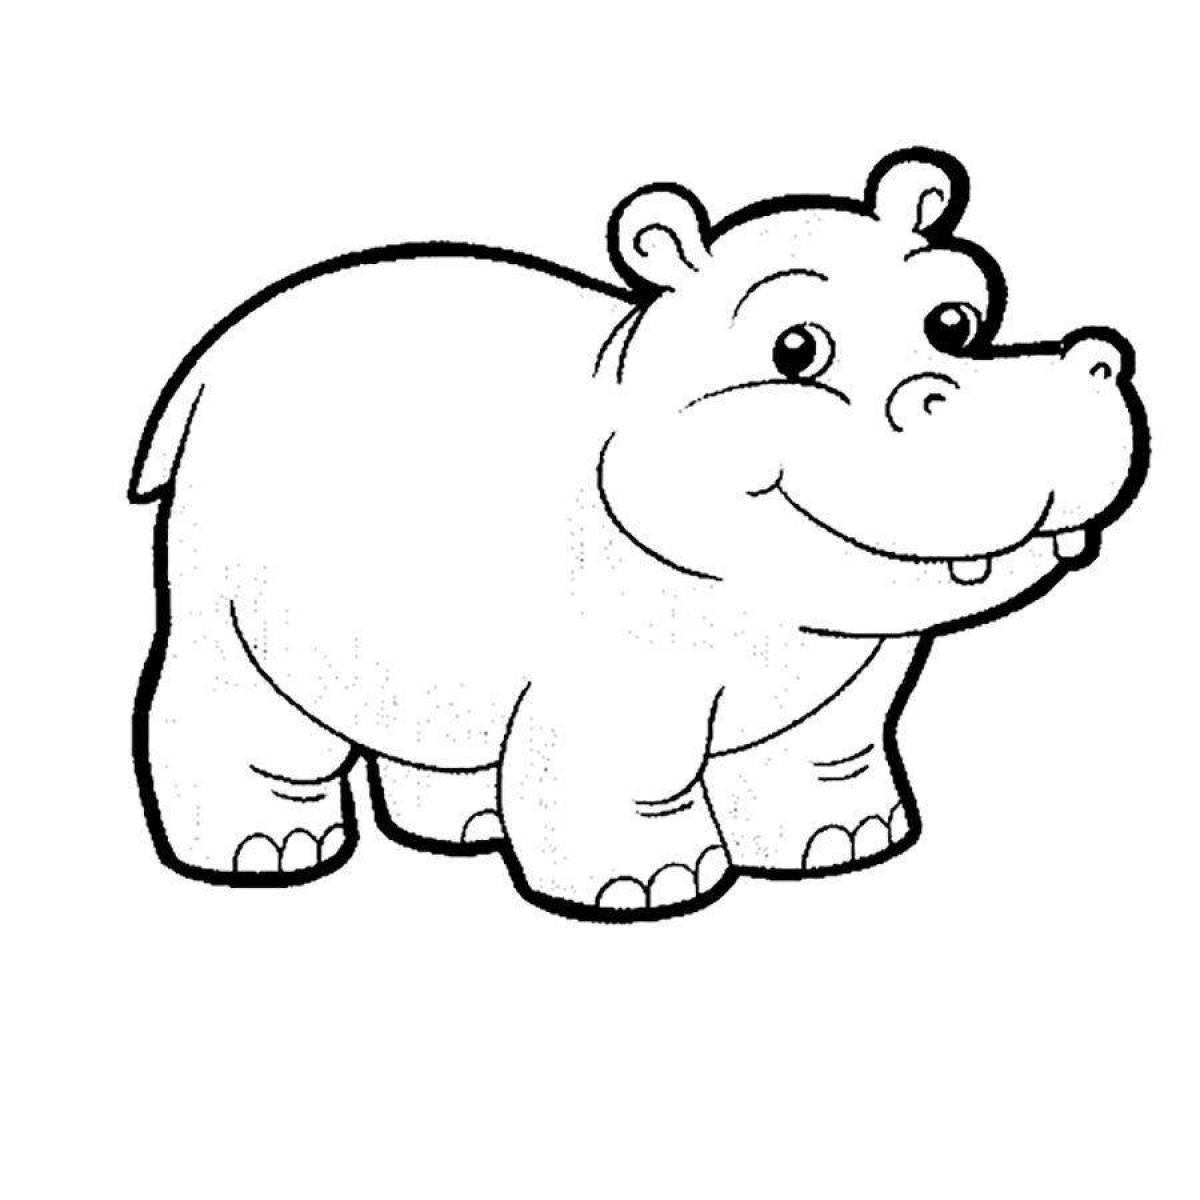 Delightful hippo coloring book